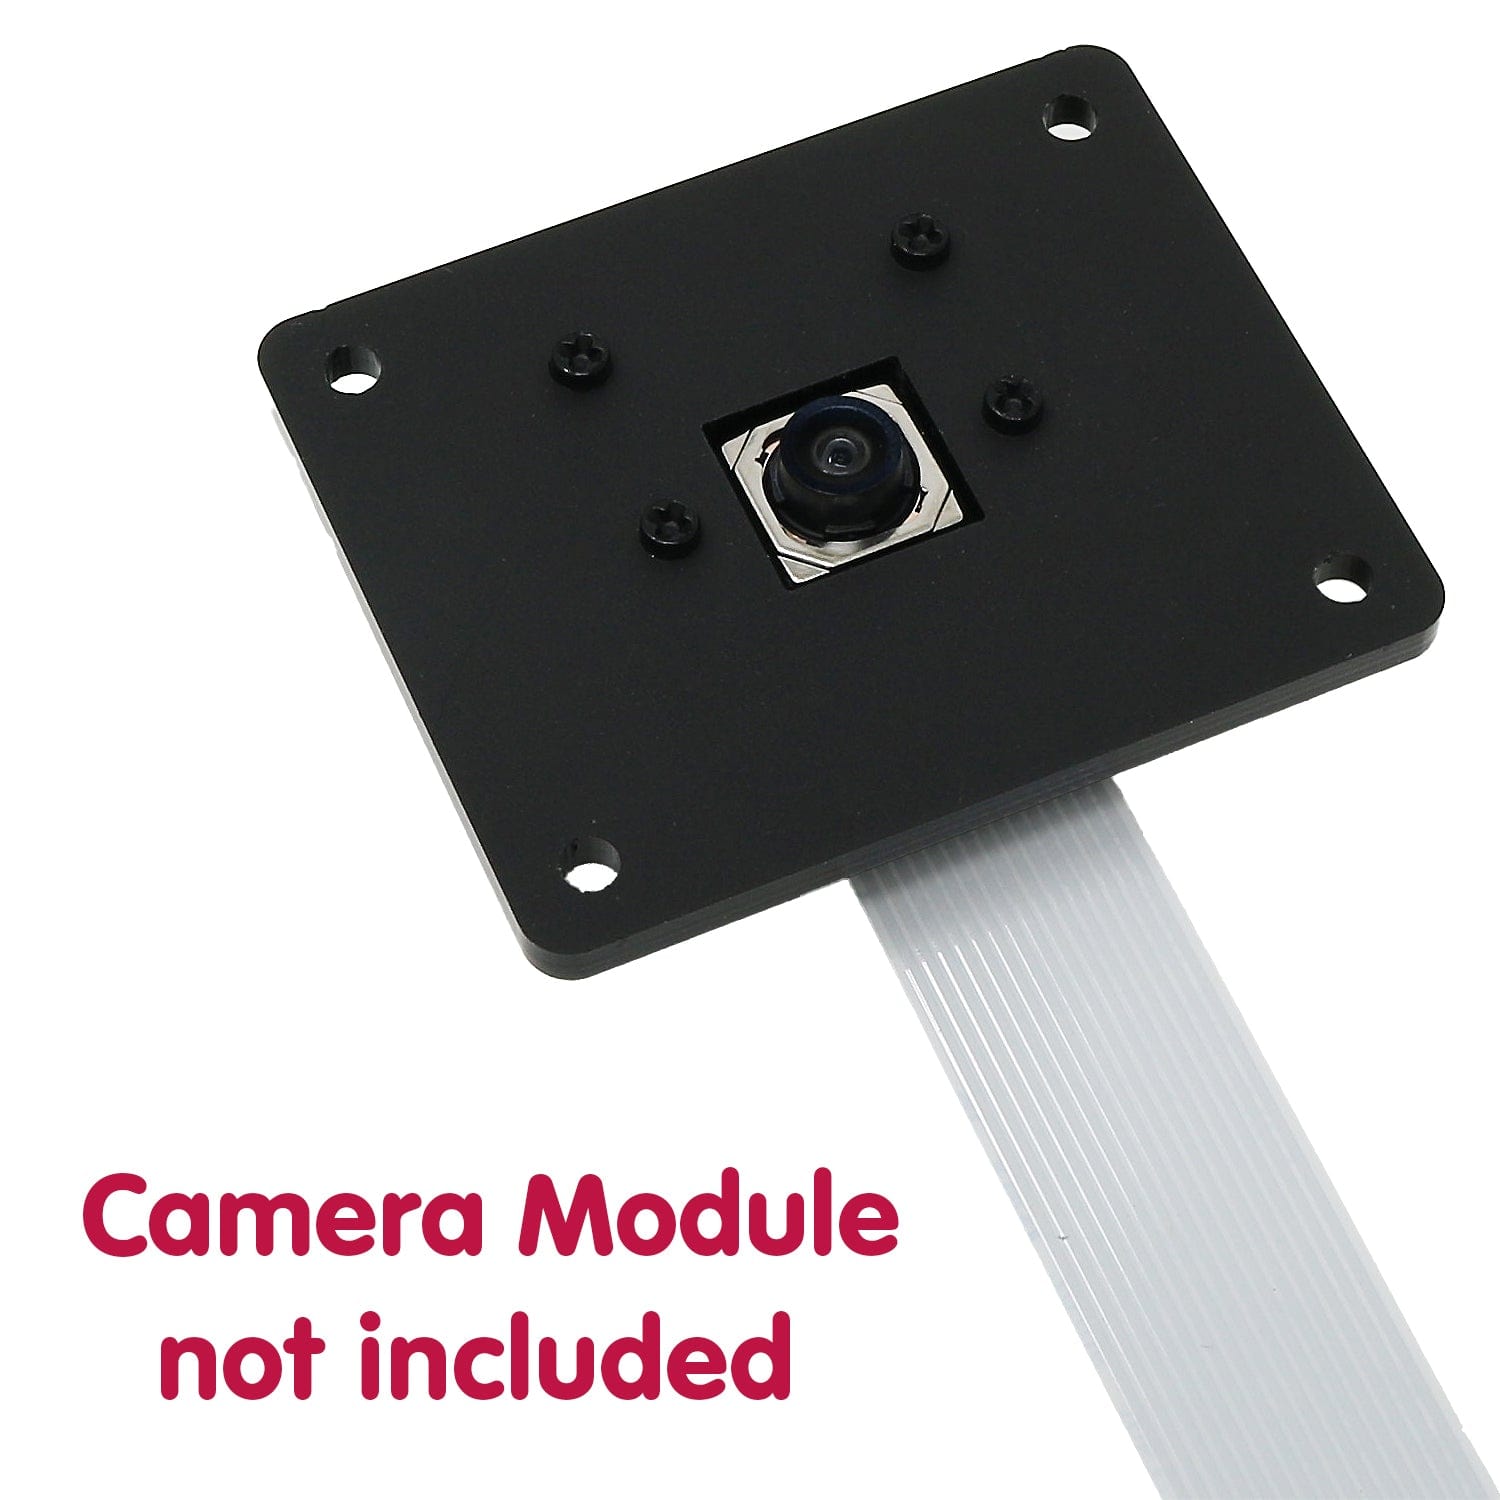 Panel Mount Kit for Raspberry Pi Camera Module 3 - The Pi Hut